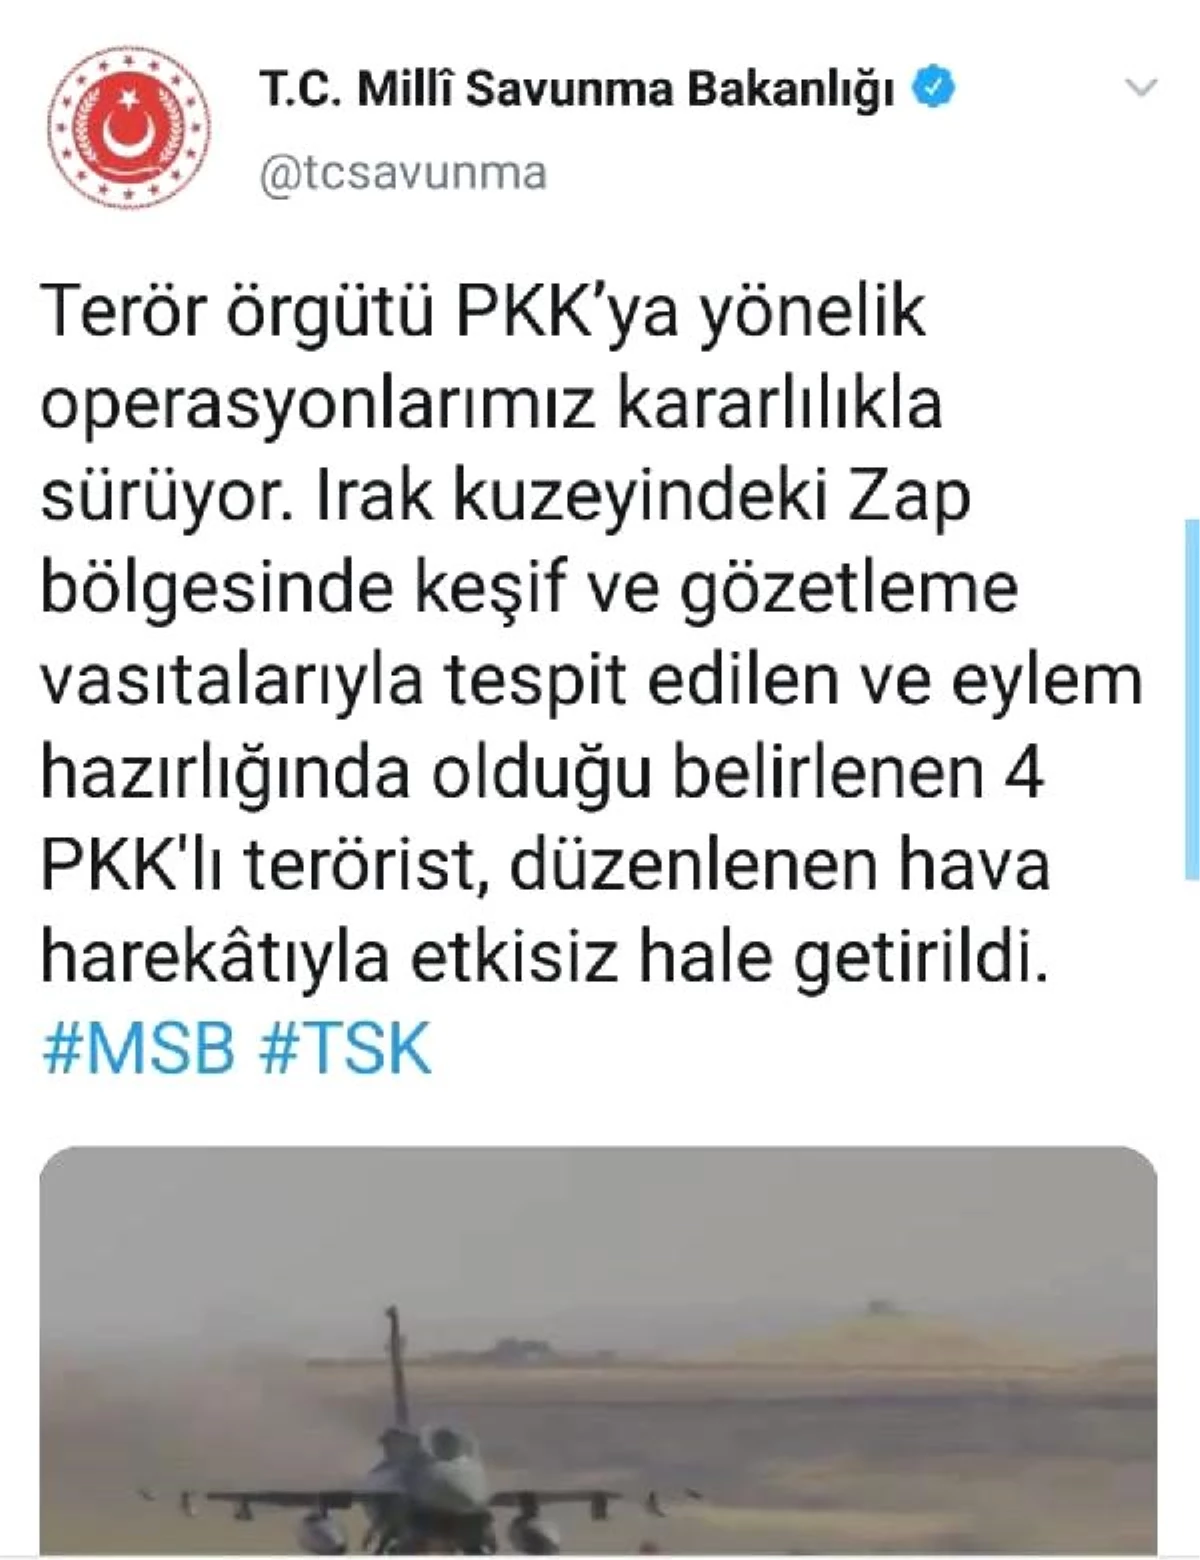 MSB: Irak kuzeyinde 4 PKK\'lı terörist etkisiz hale getirildi